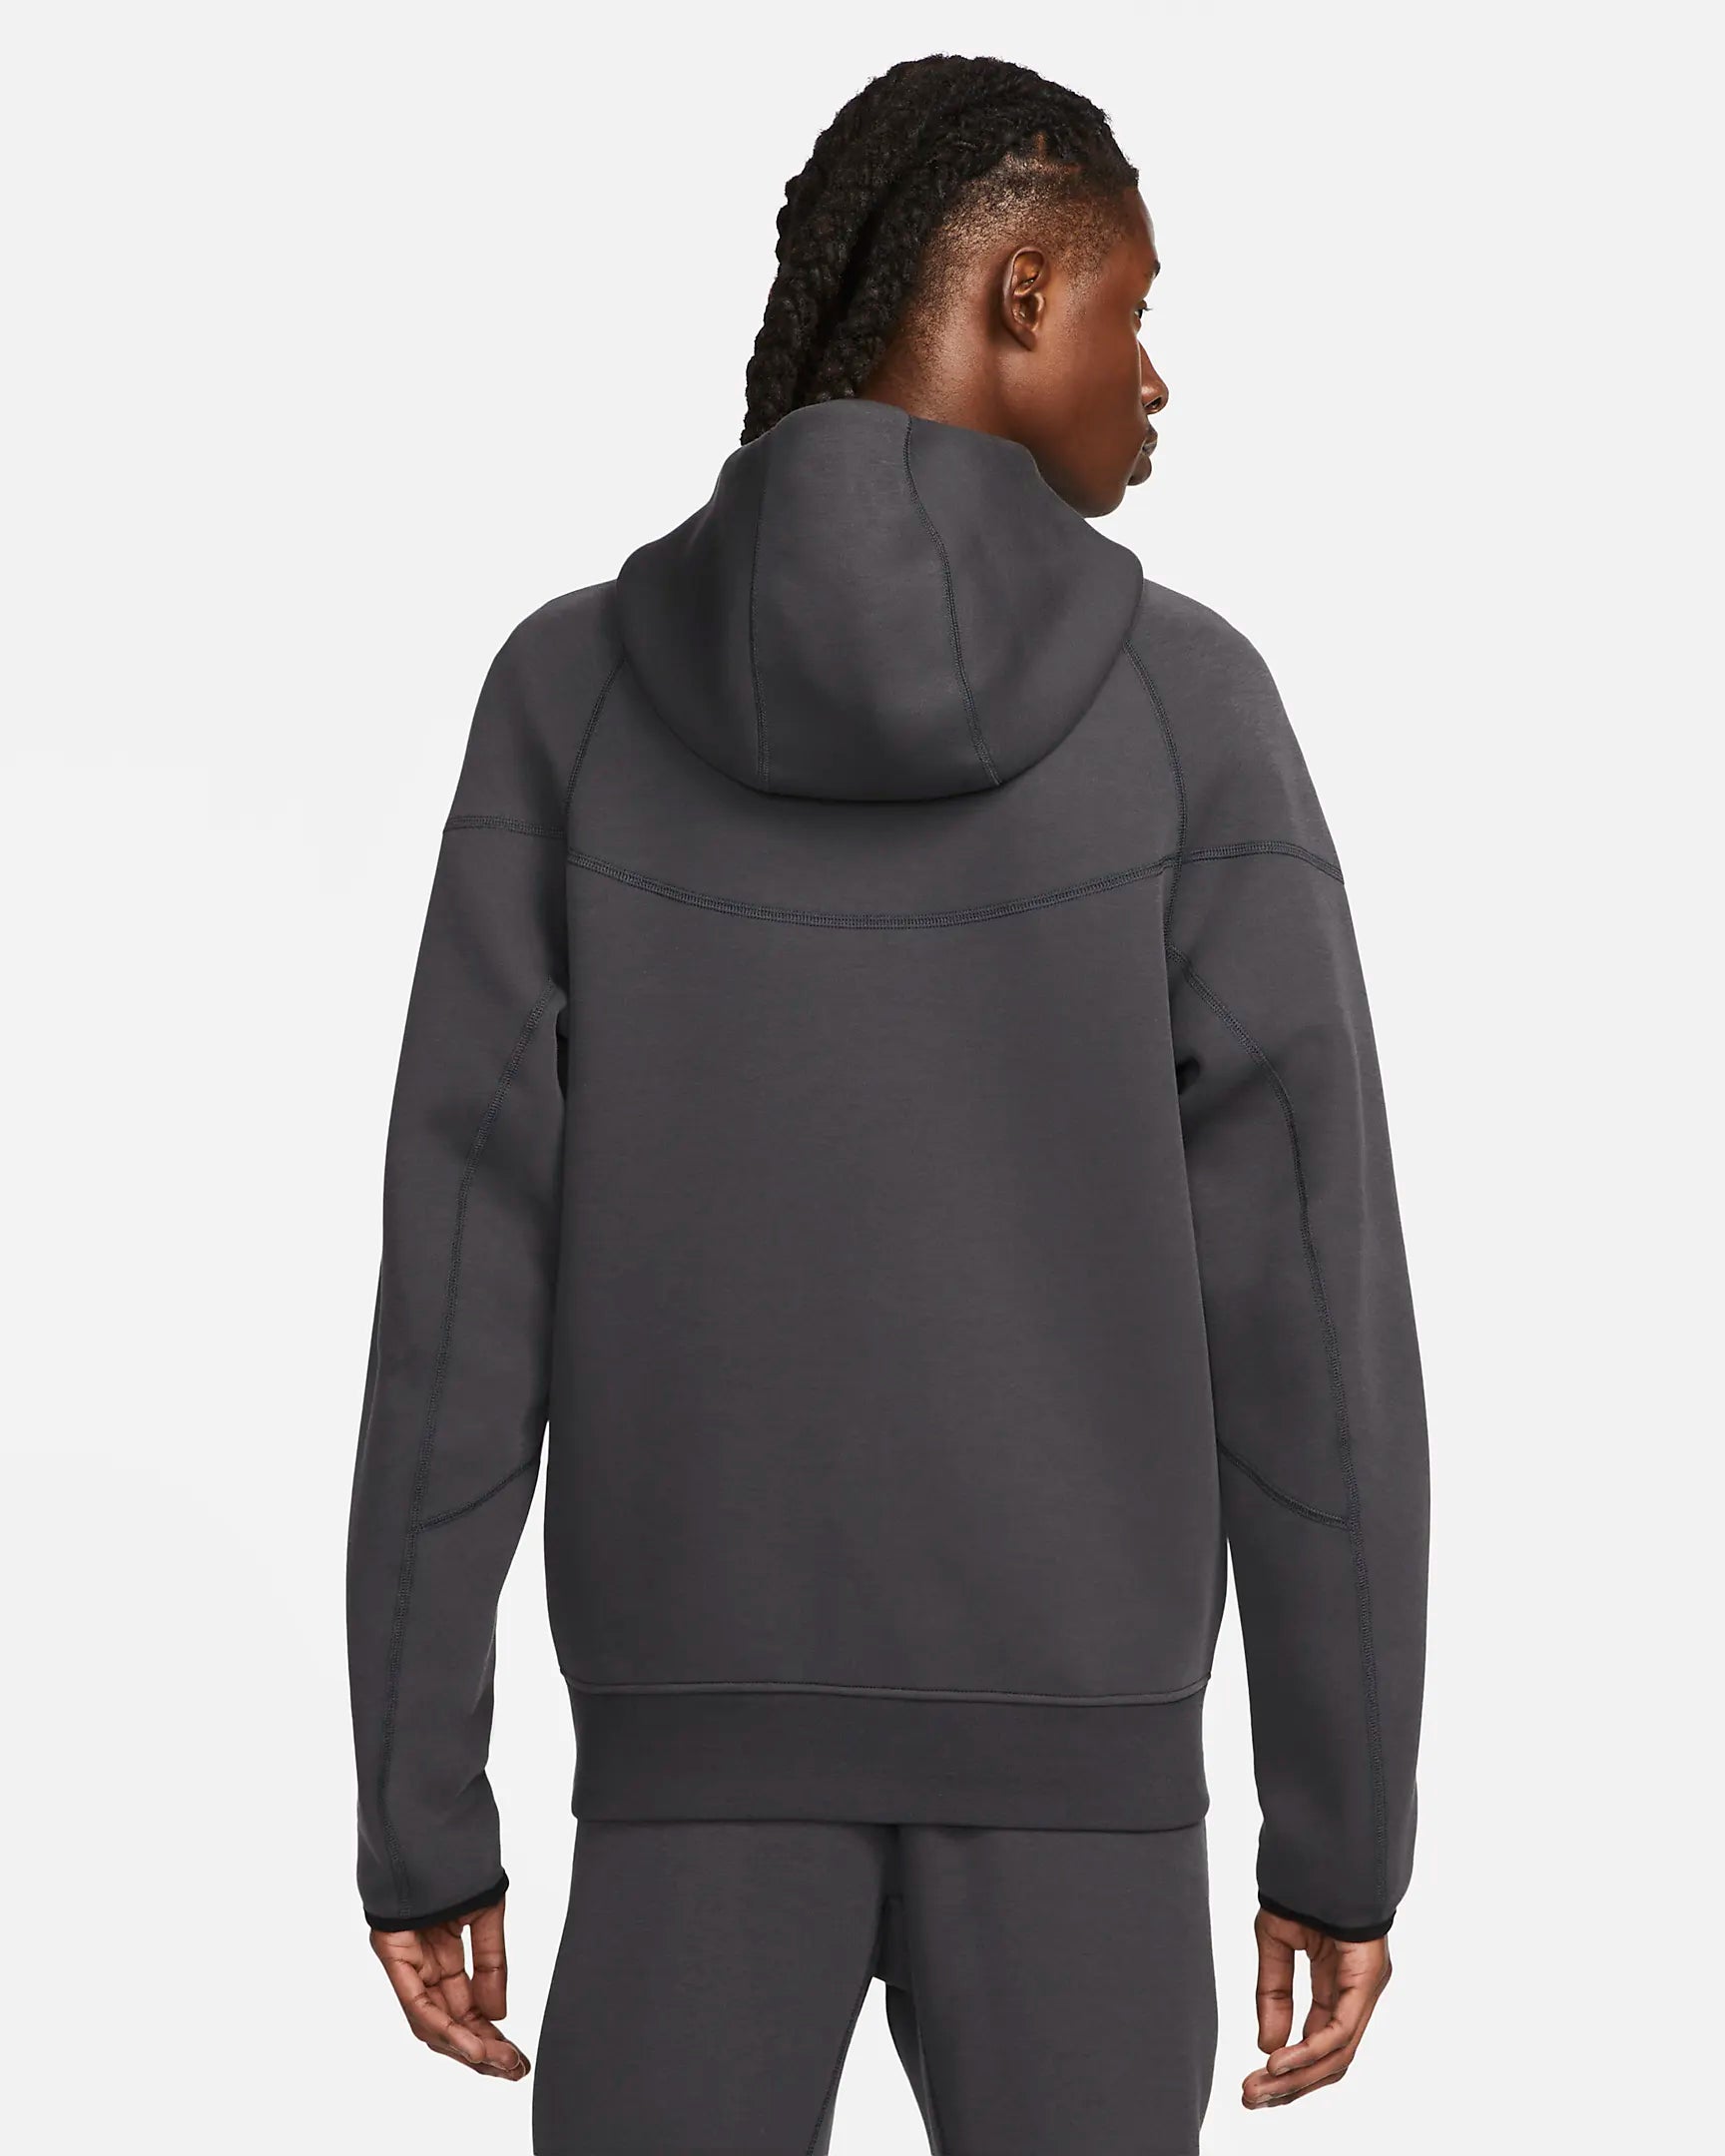 Nike Tech Fleece Windrunner Jacket - Black/Anthracite Gray